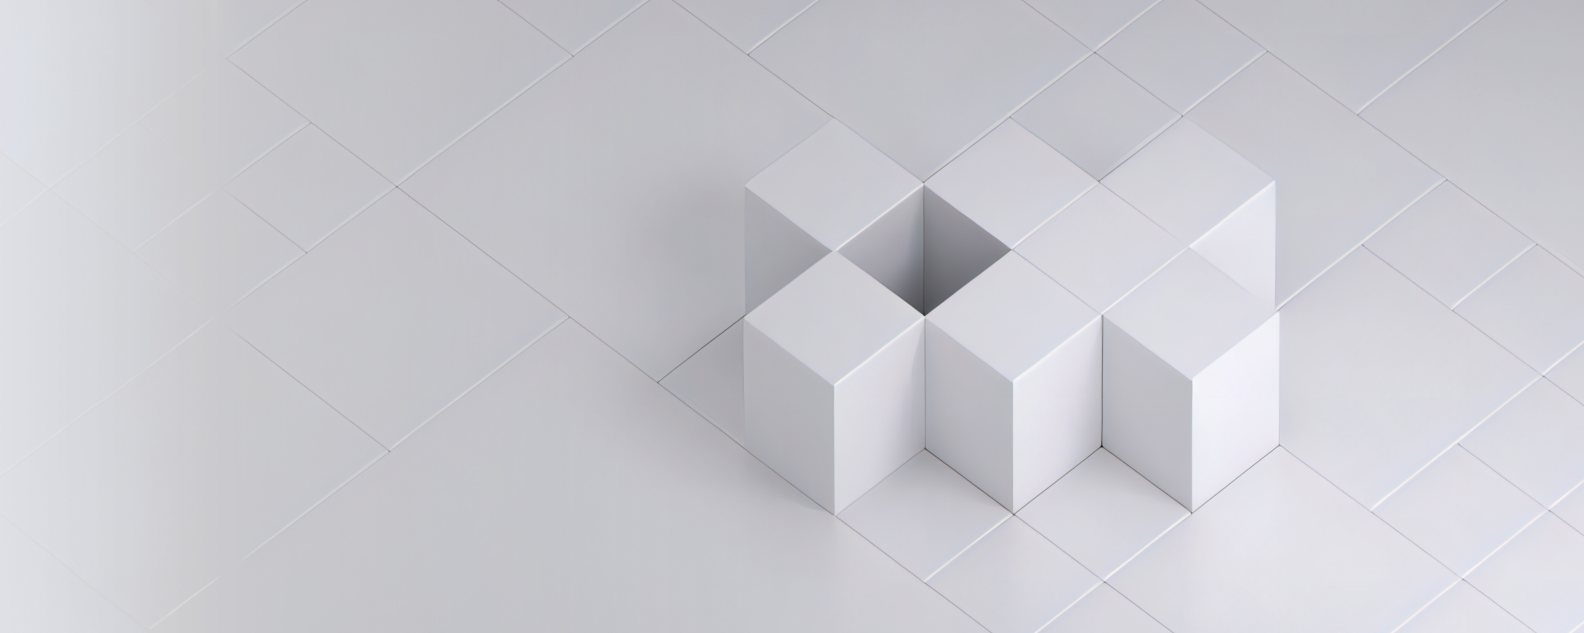 Gambar realistis atau foto tujuh kubus putih yang disusun pada petak kotak berwarna putih yang menciptakan pola